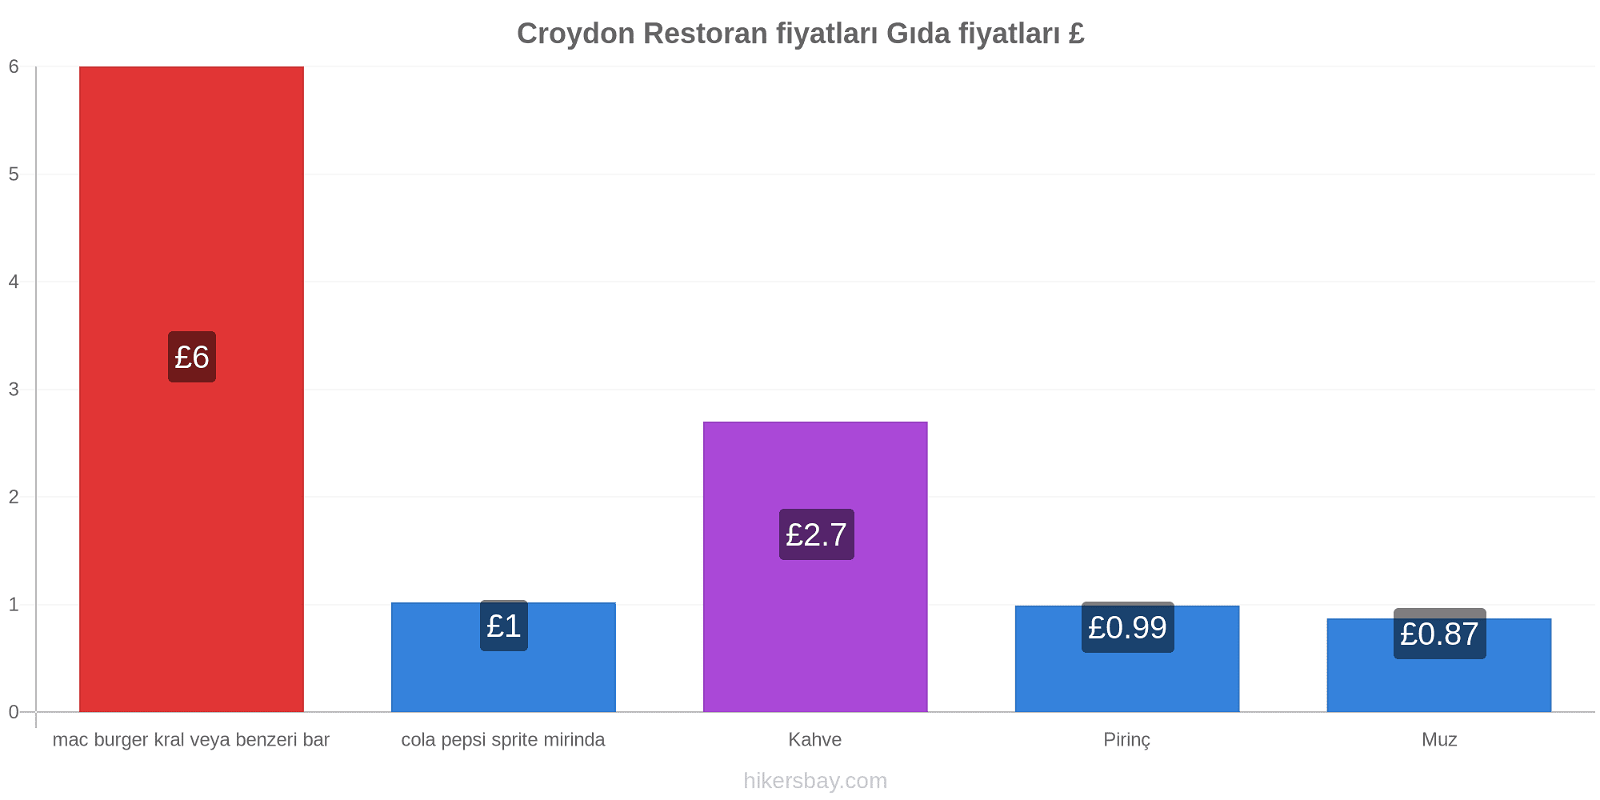 Croydon fiyat değişiklikleri hikersbay.com